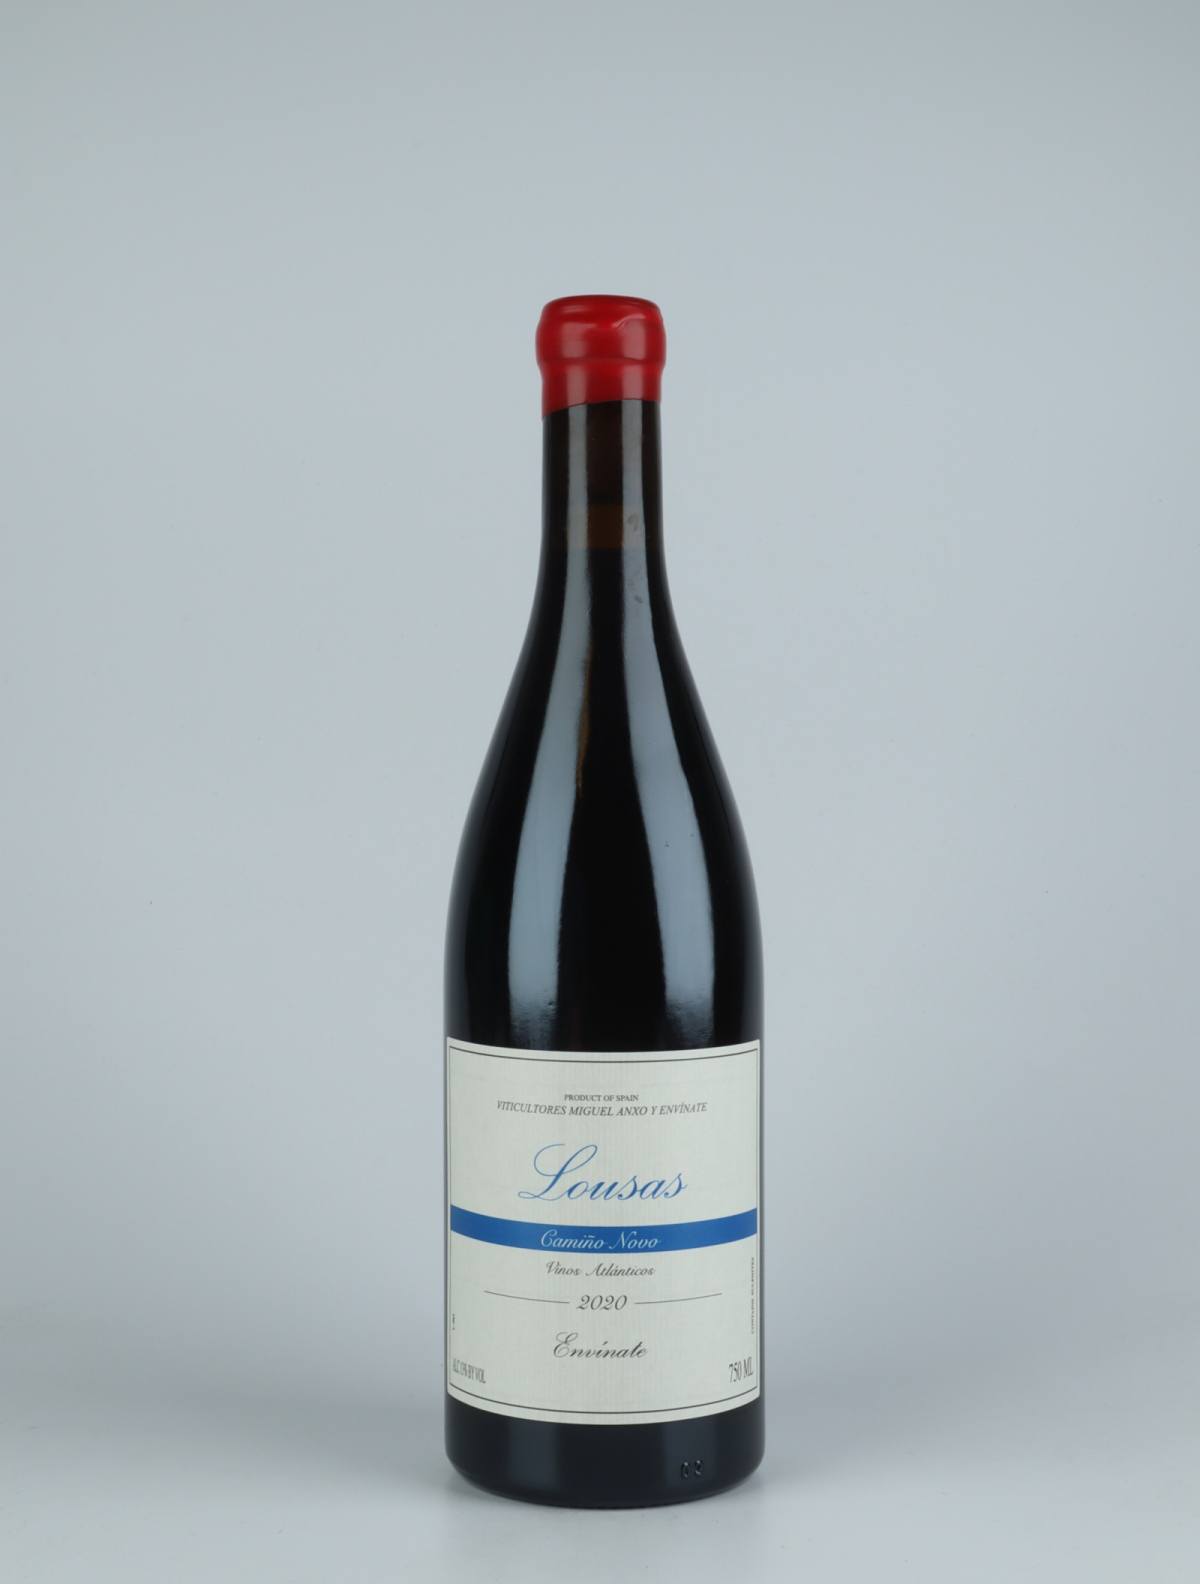 A bottle 2020 Lousas Camiño Novo - Ribeira Sacra Red wine from Envínate, Ribeira Sacra in Spain